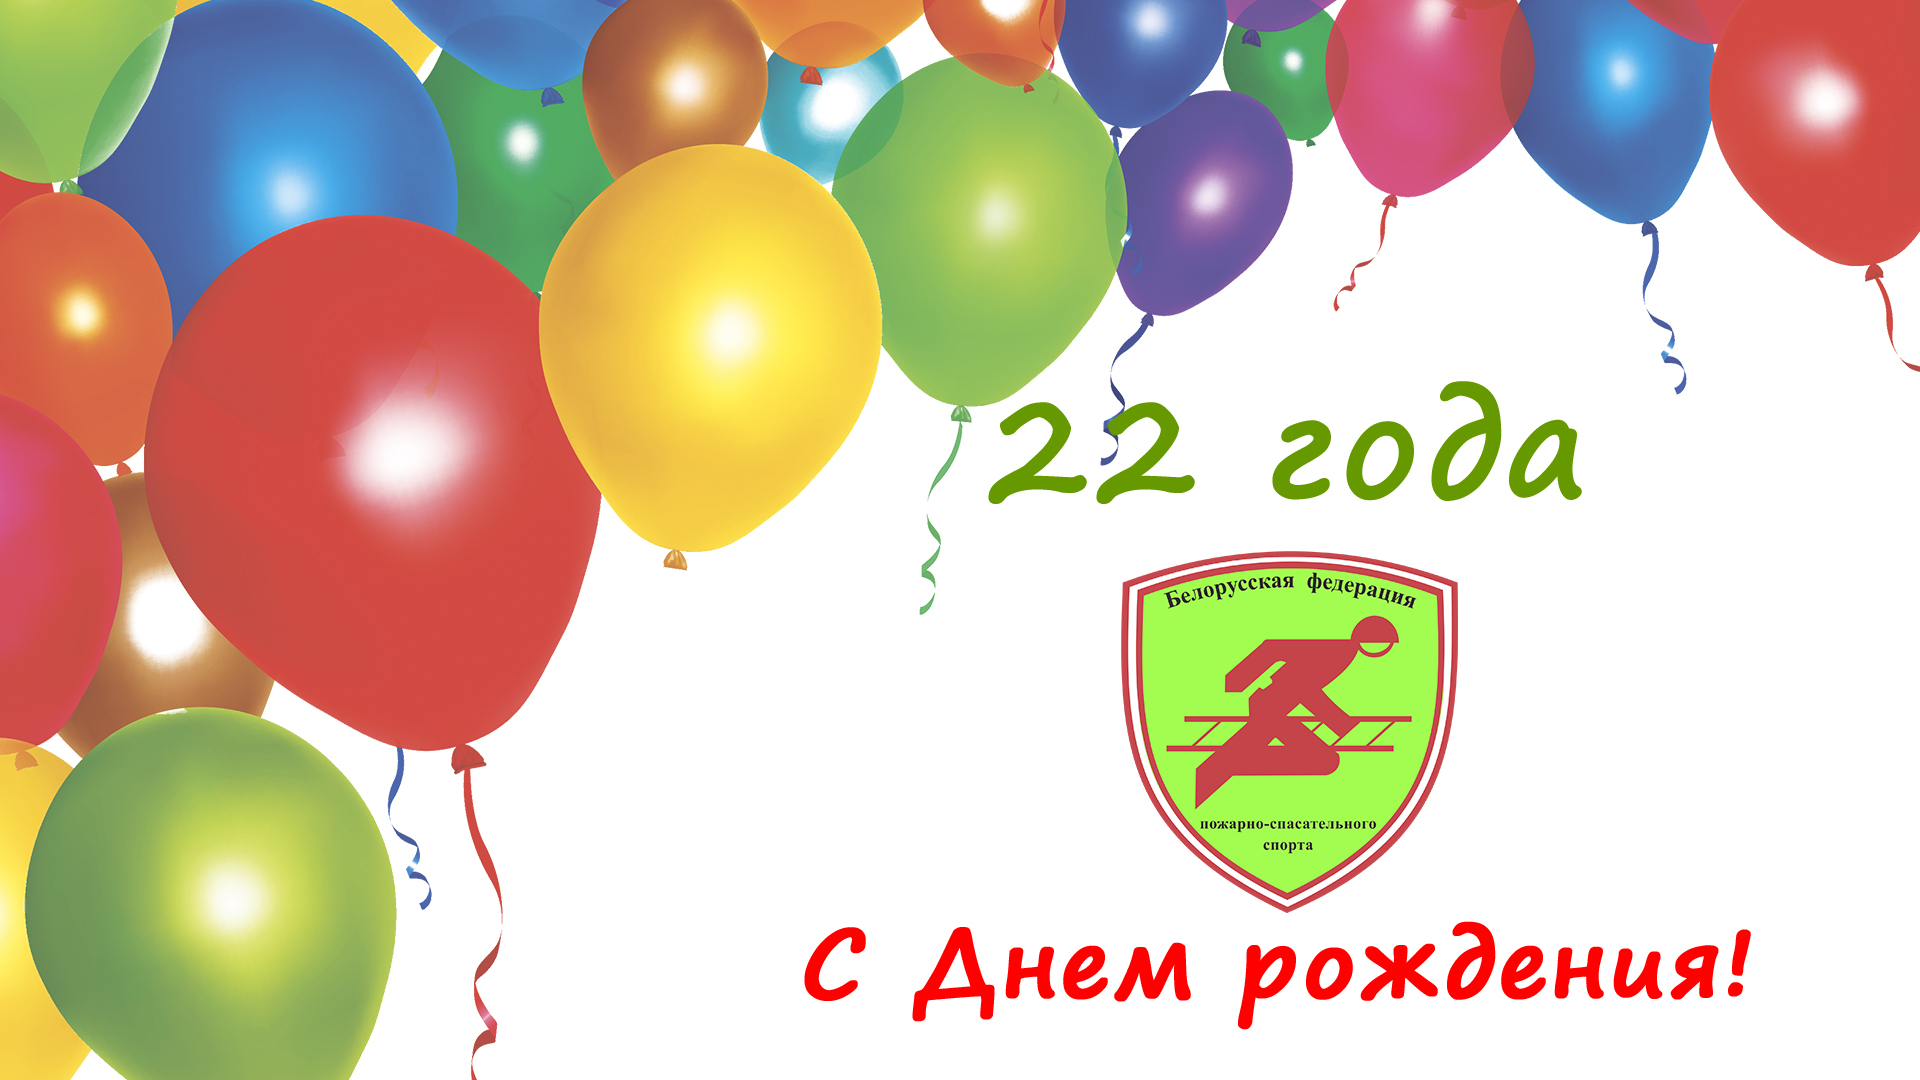 Белорусской федерации пожарно-спасательного спорта 22 года!